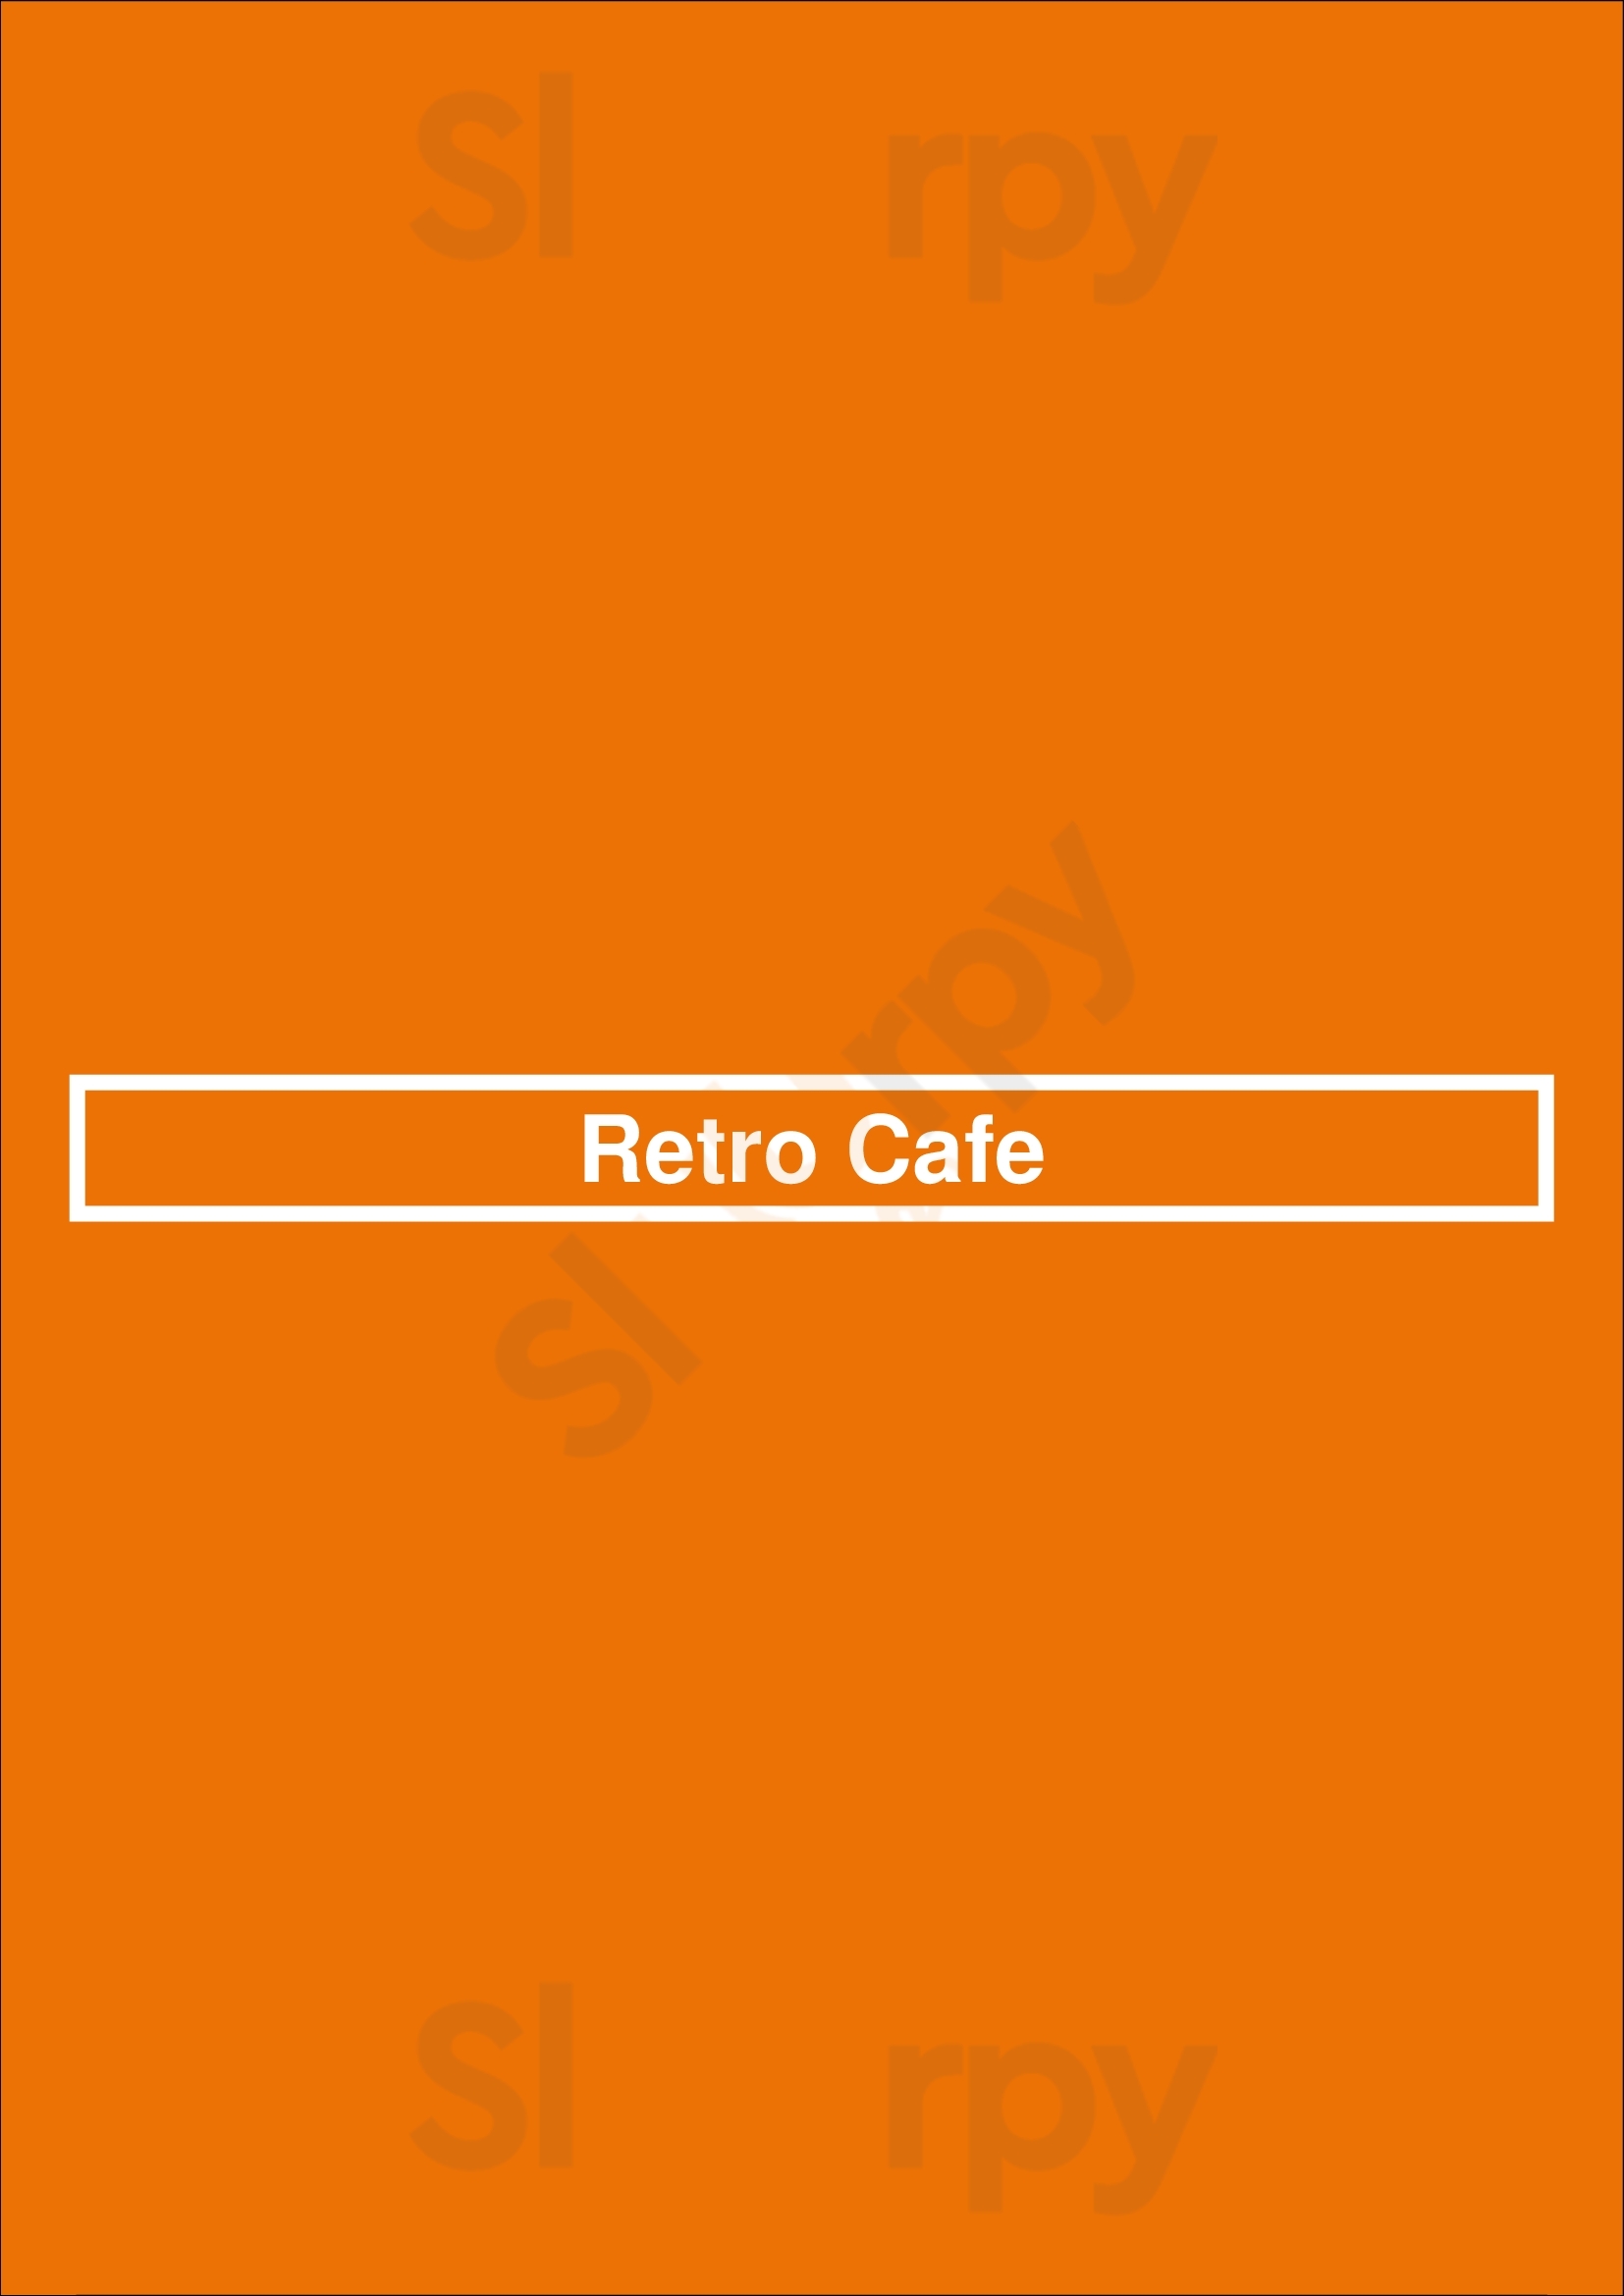 Retro Cafe Cypress Menu - 1